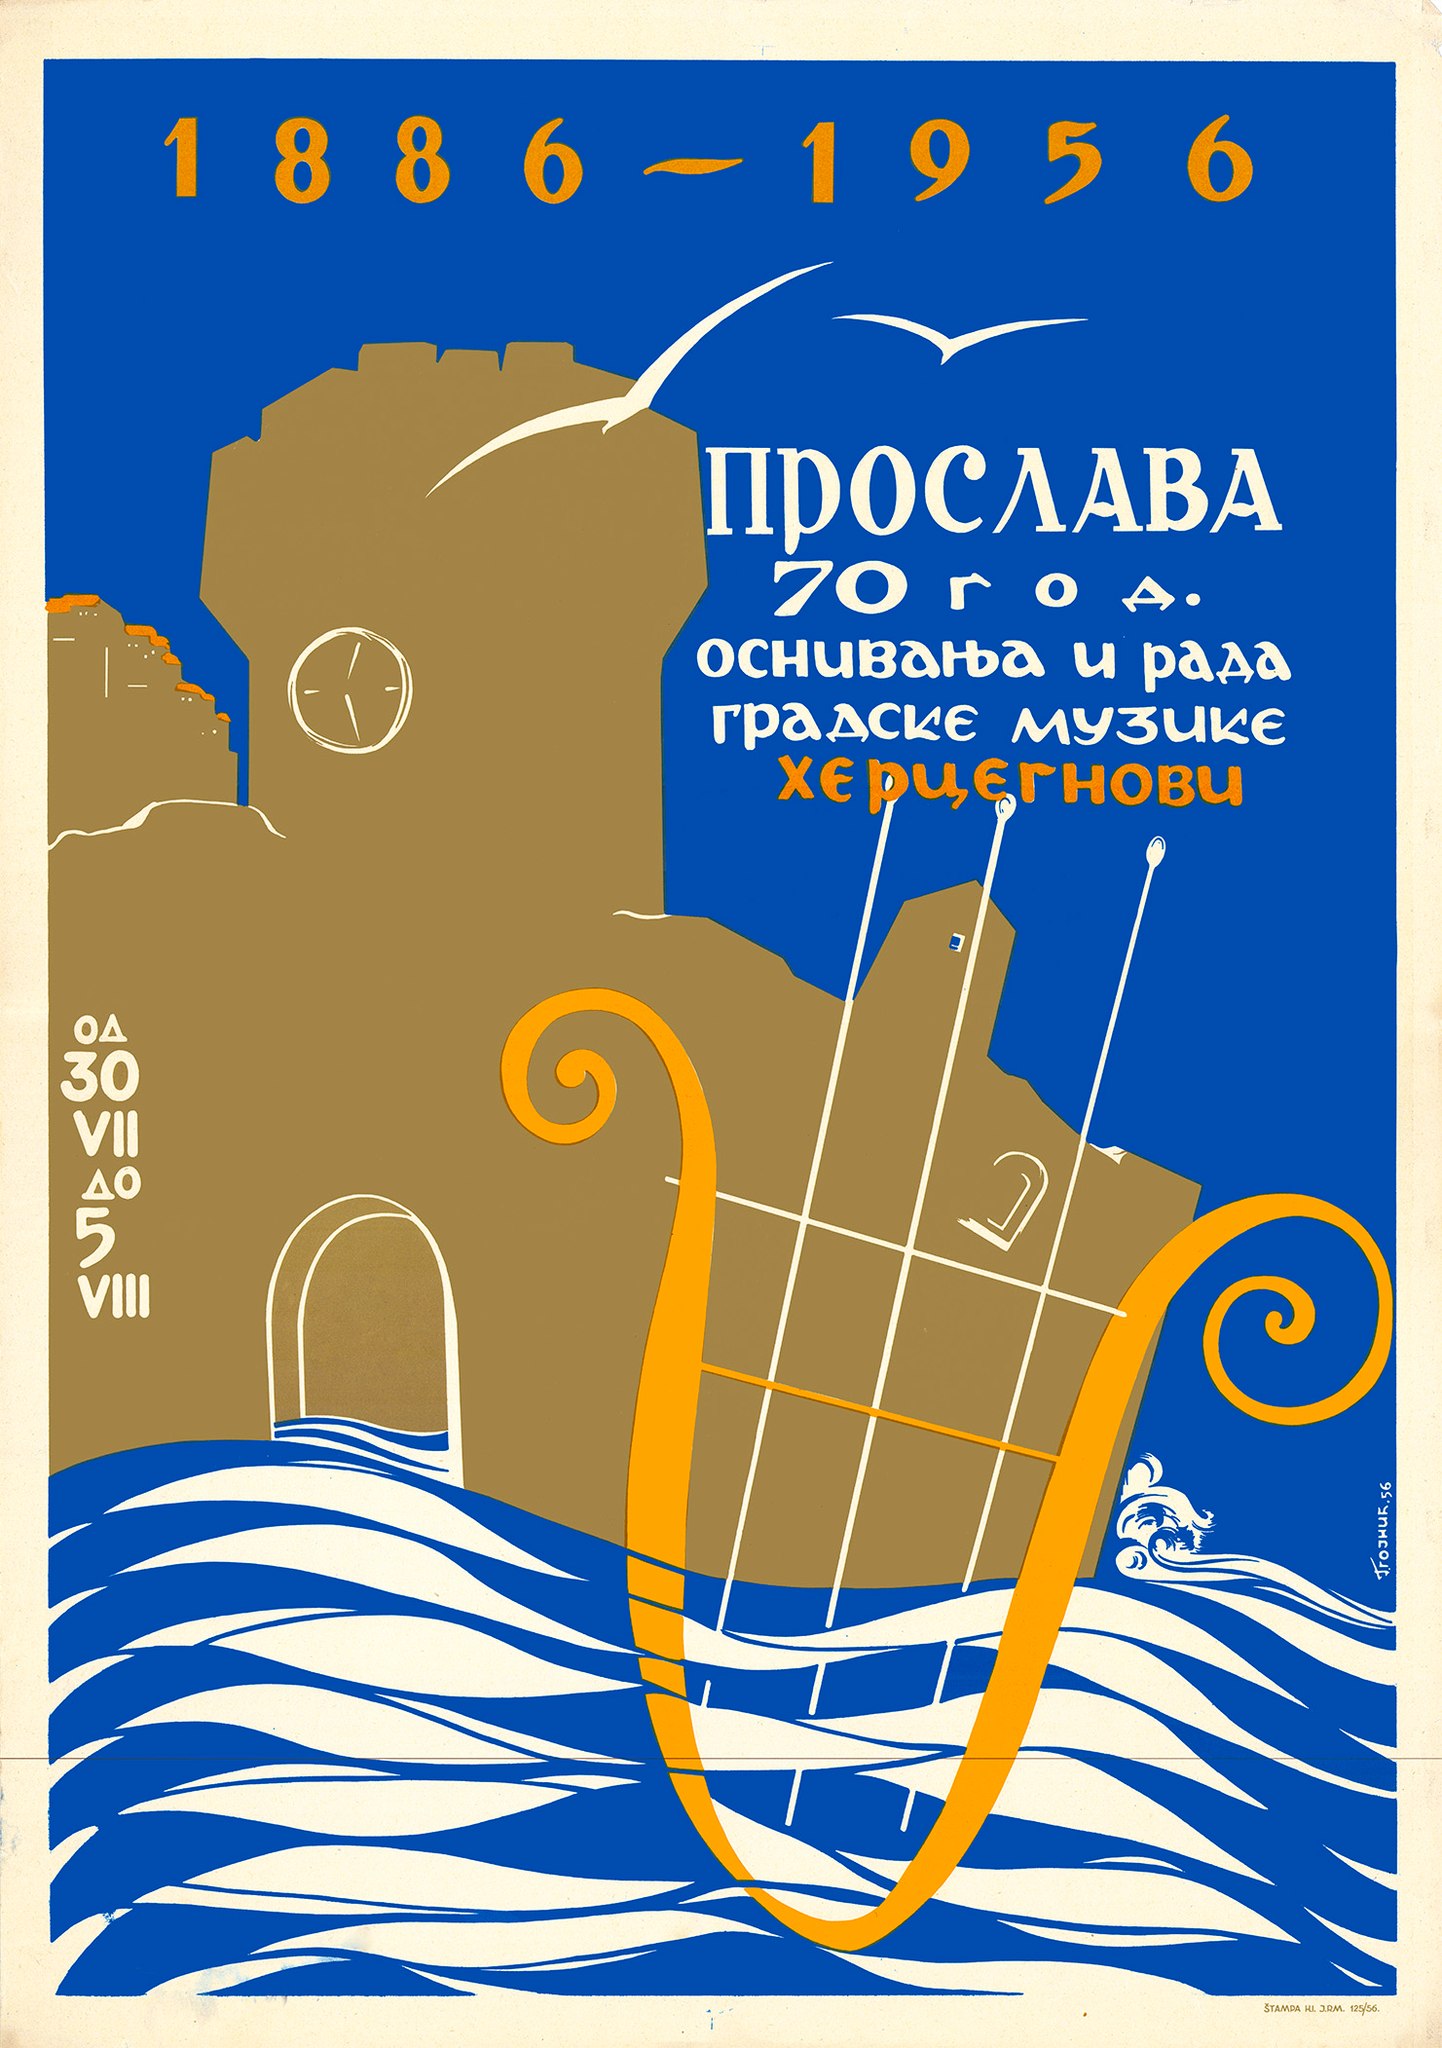 Izložba “Muzički plakat u Crnoj Gori 1950-1990“